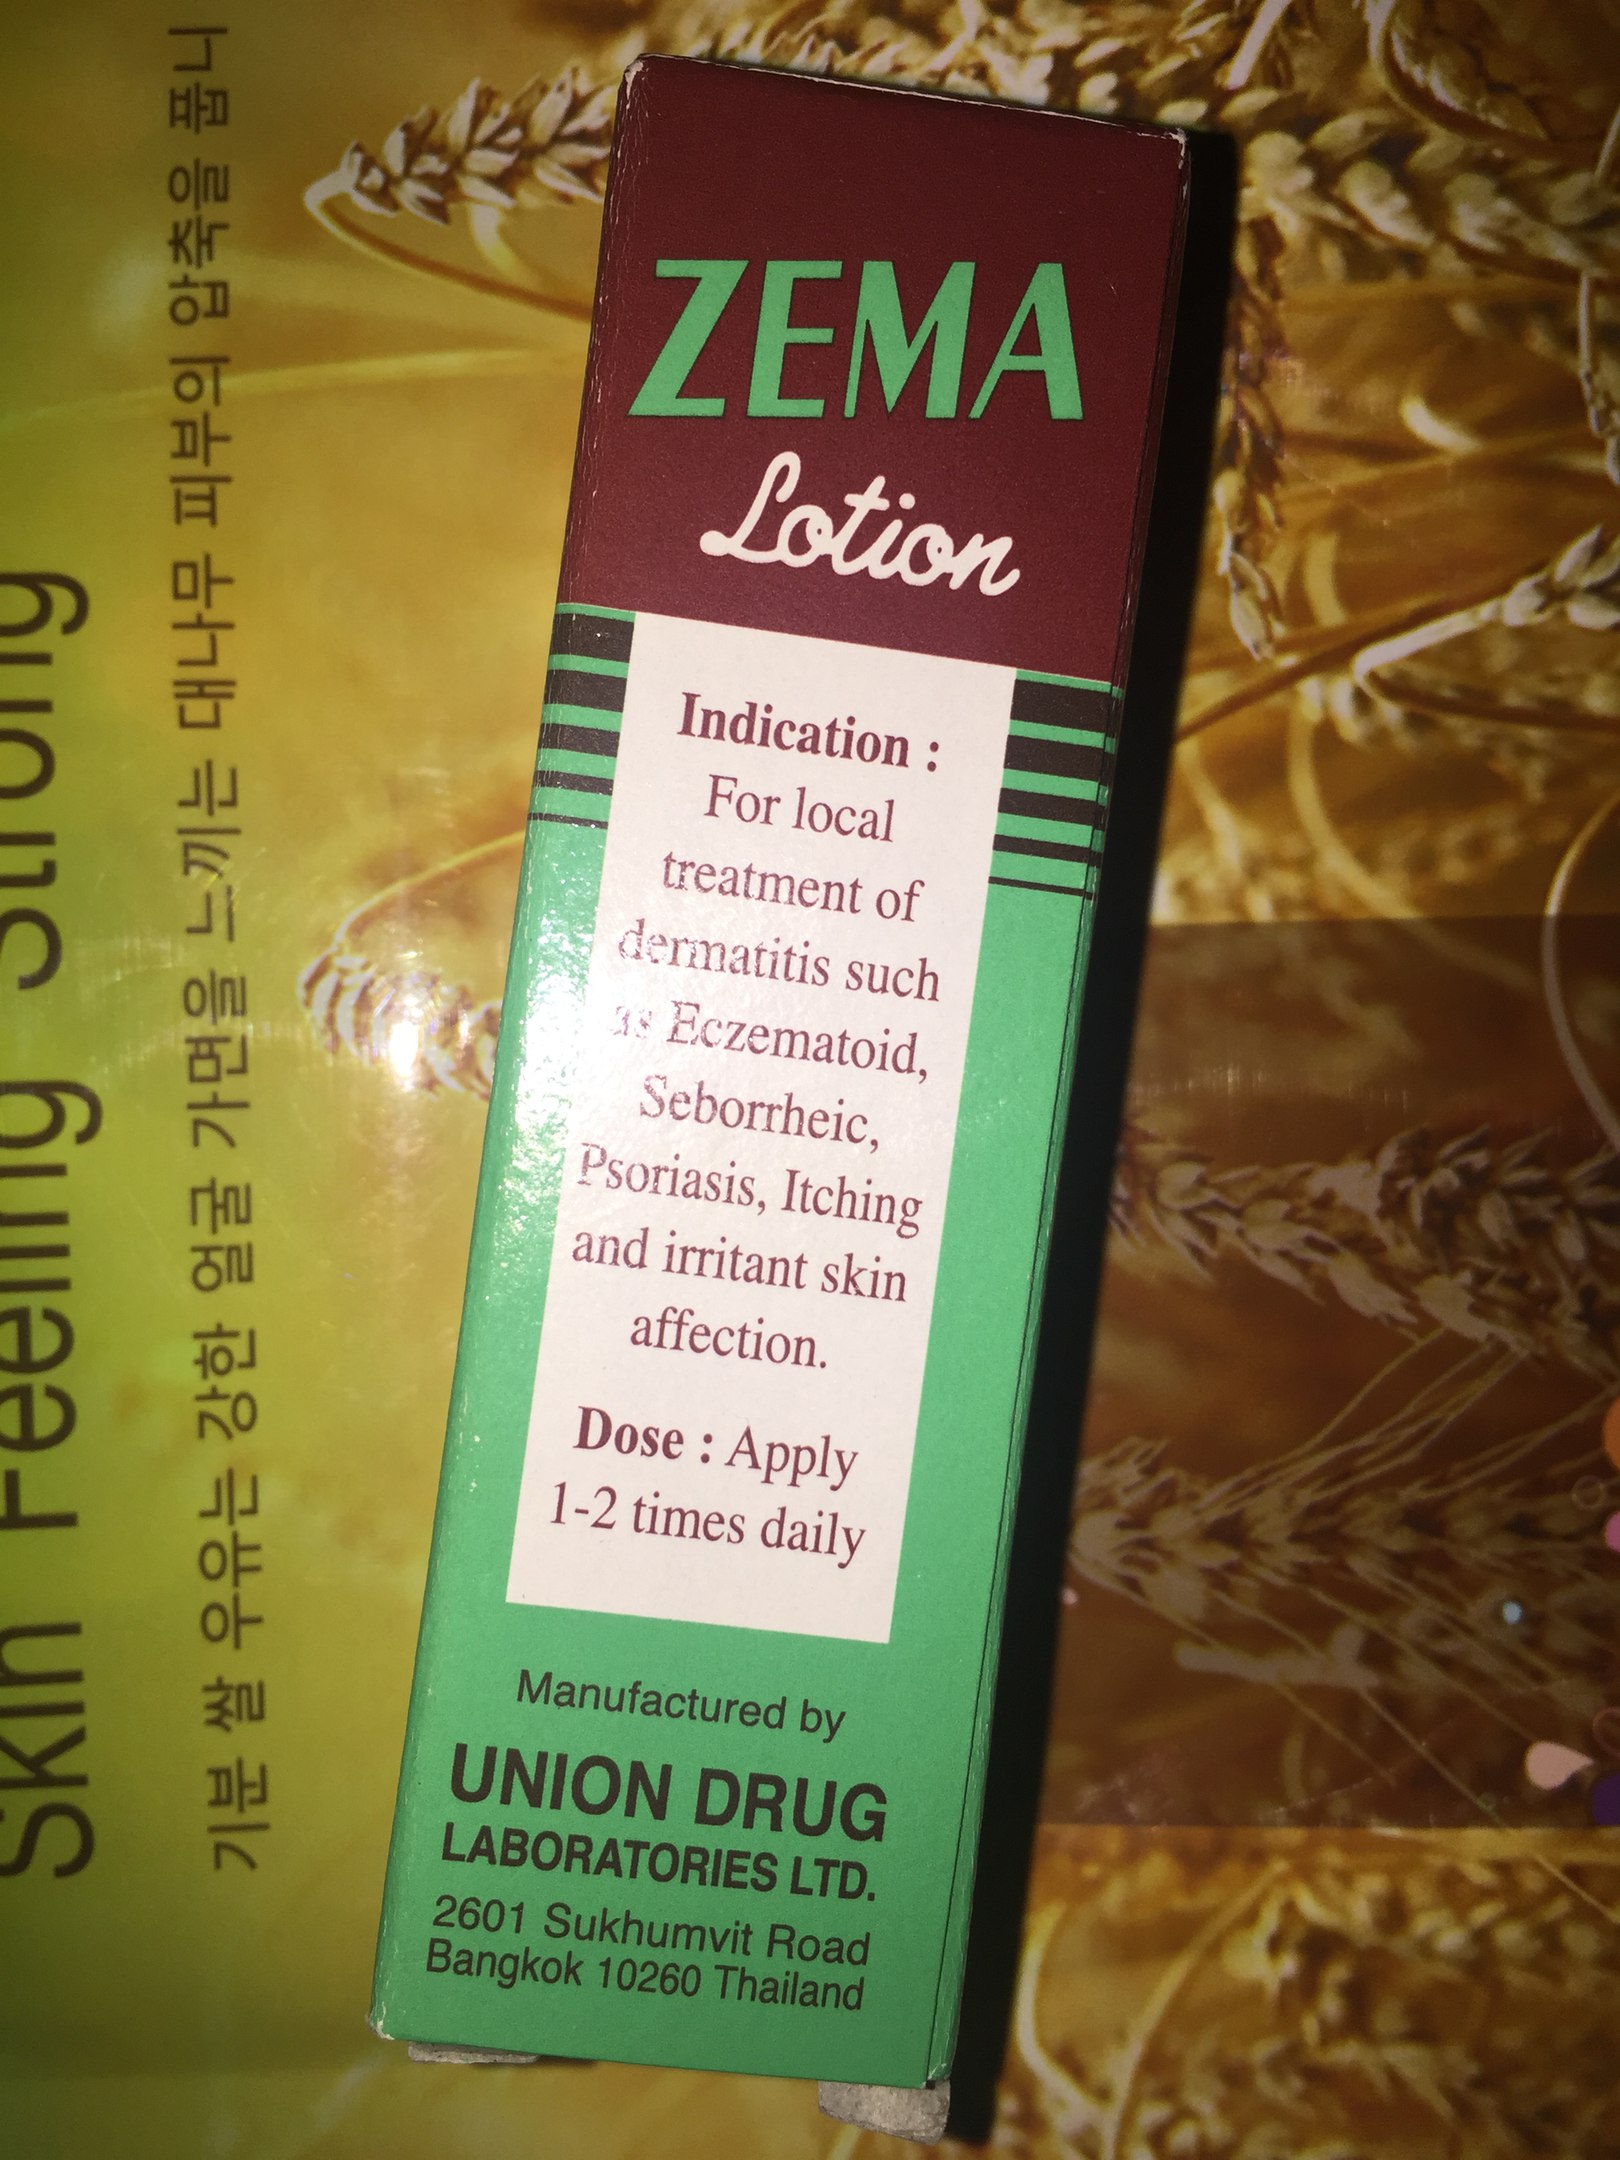 Натуральный дерматологический лосьон из Тайланда для лечения кожных заболеваний ZEMA Lotion купить в Москве и Московской области.